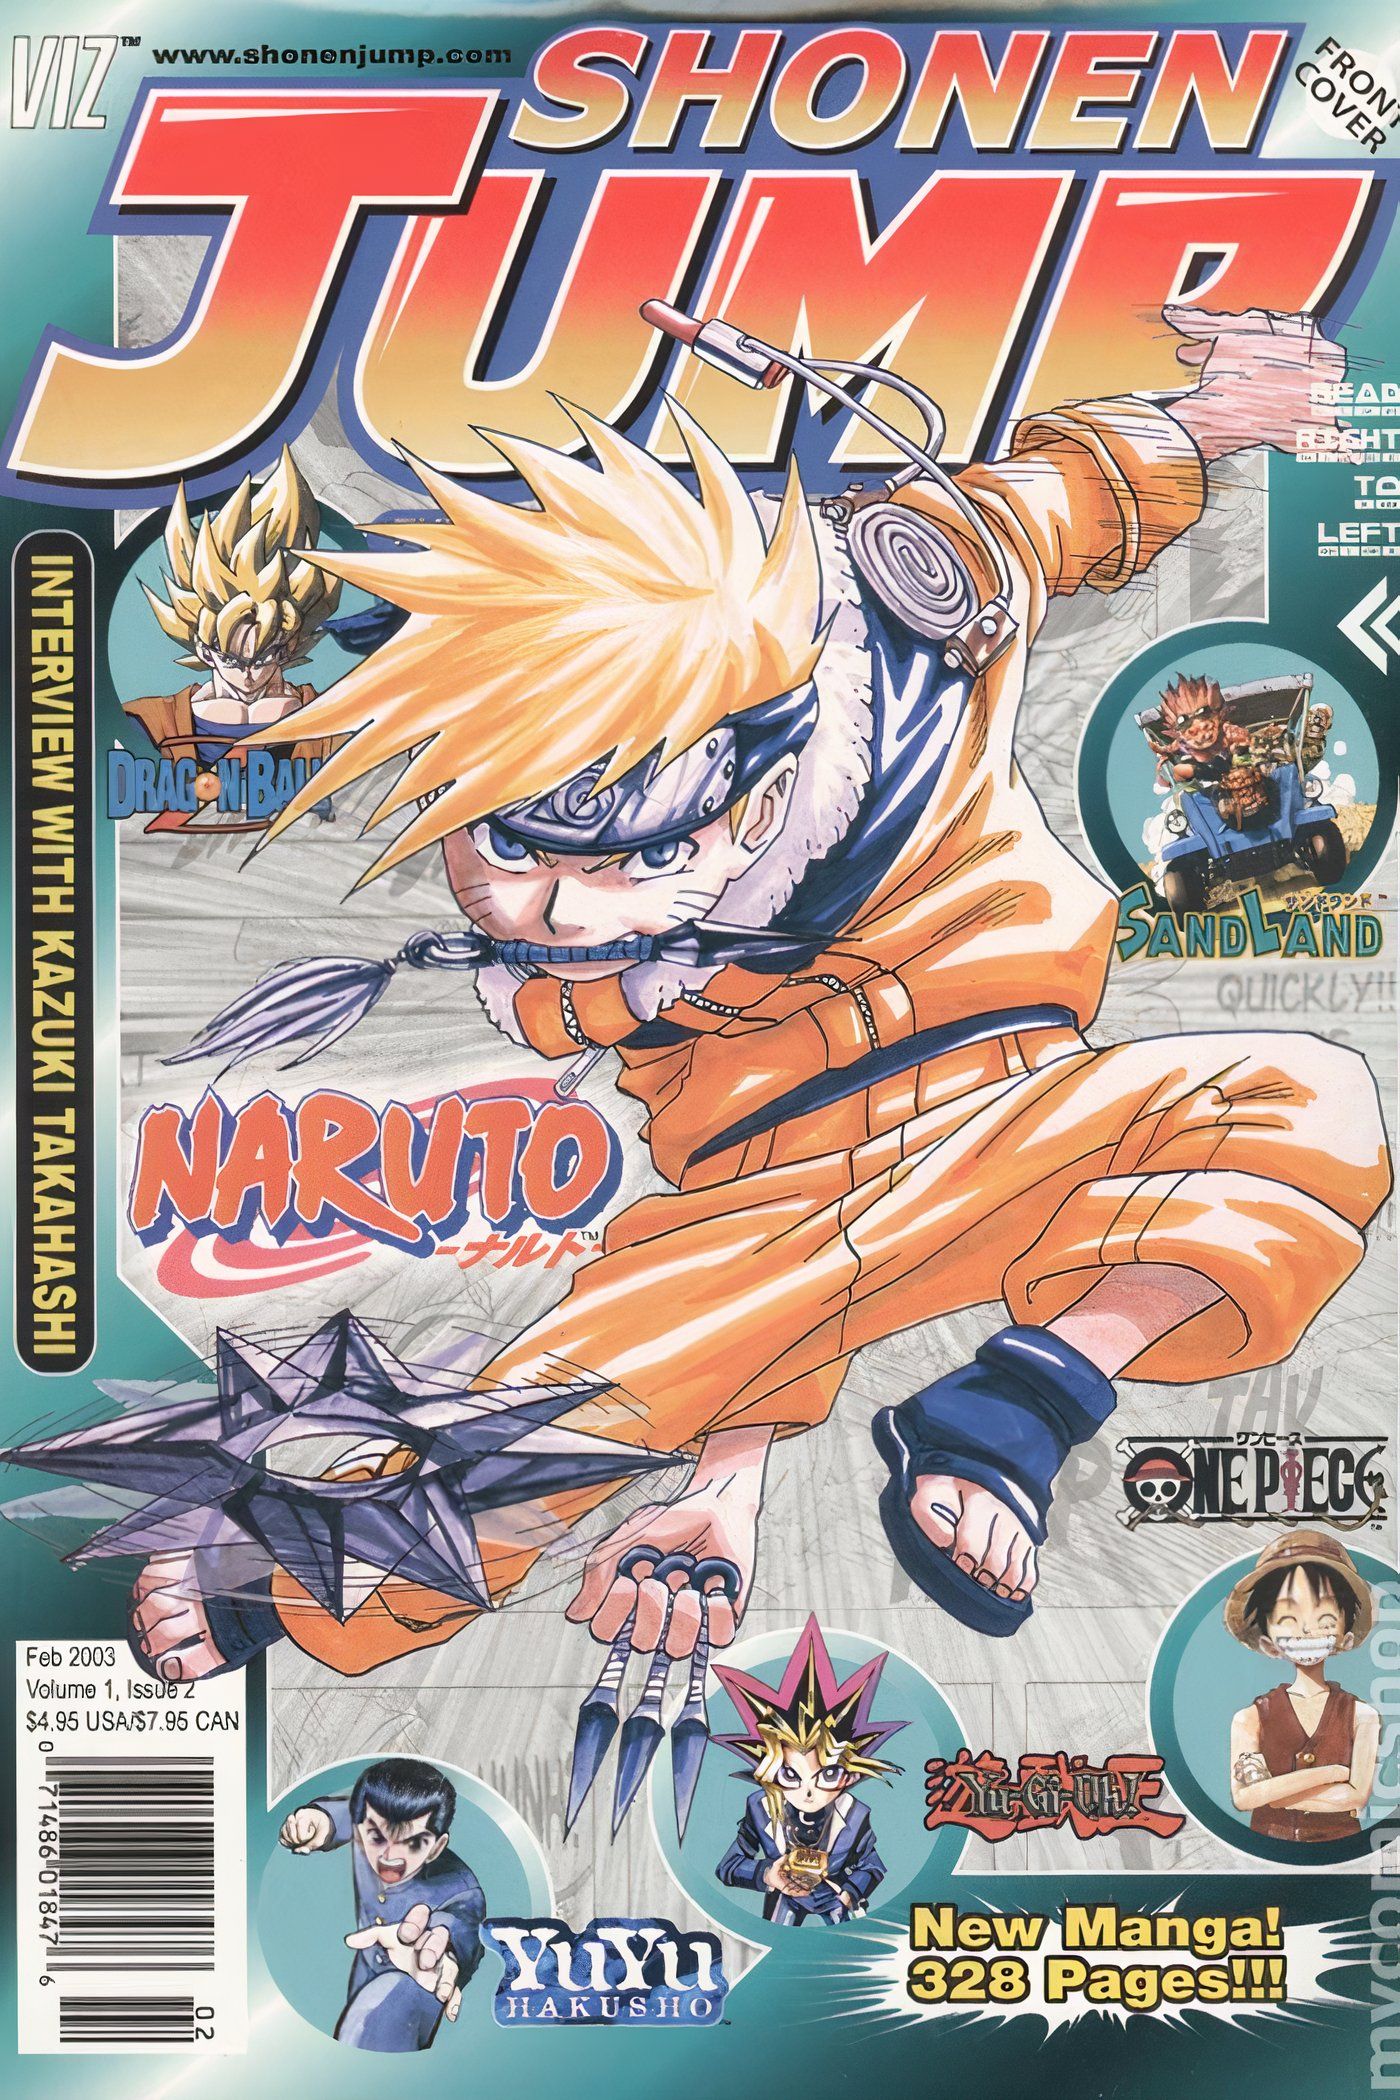 American Weekly Shonen Jump 2 com o garoto Naruto